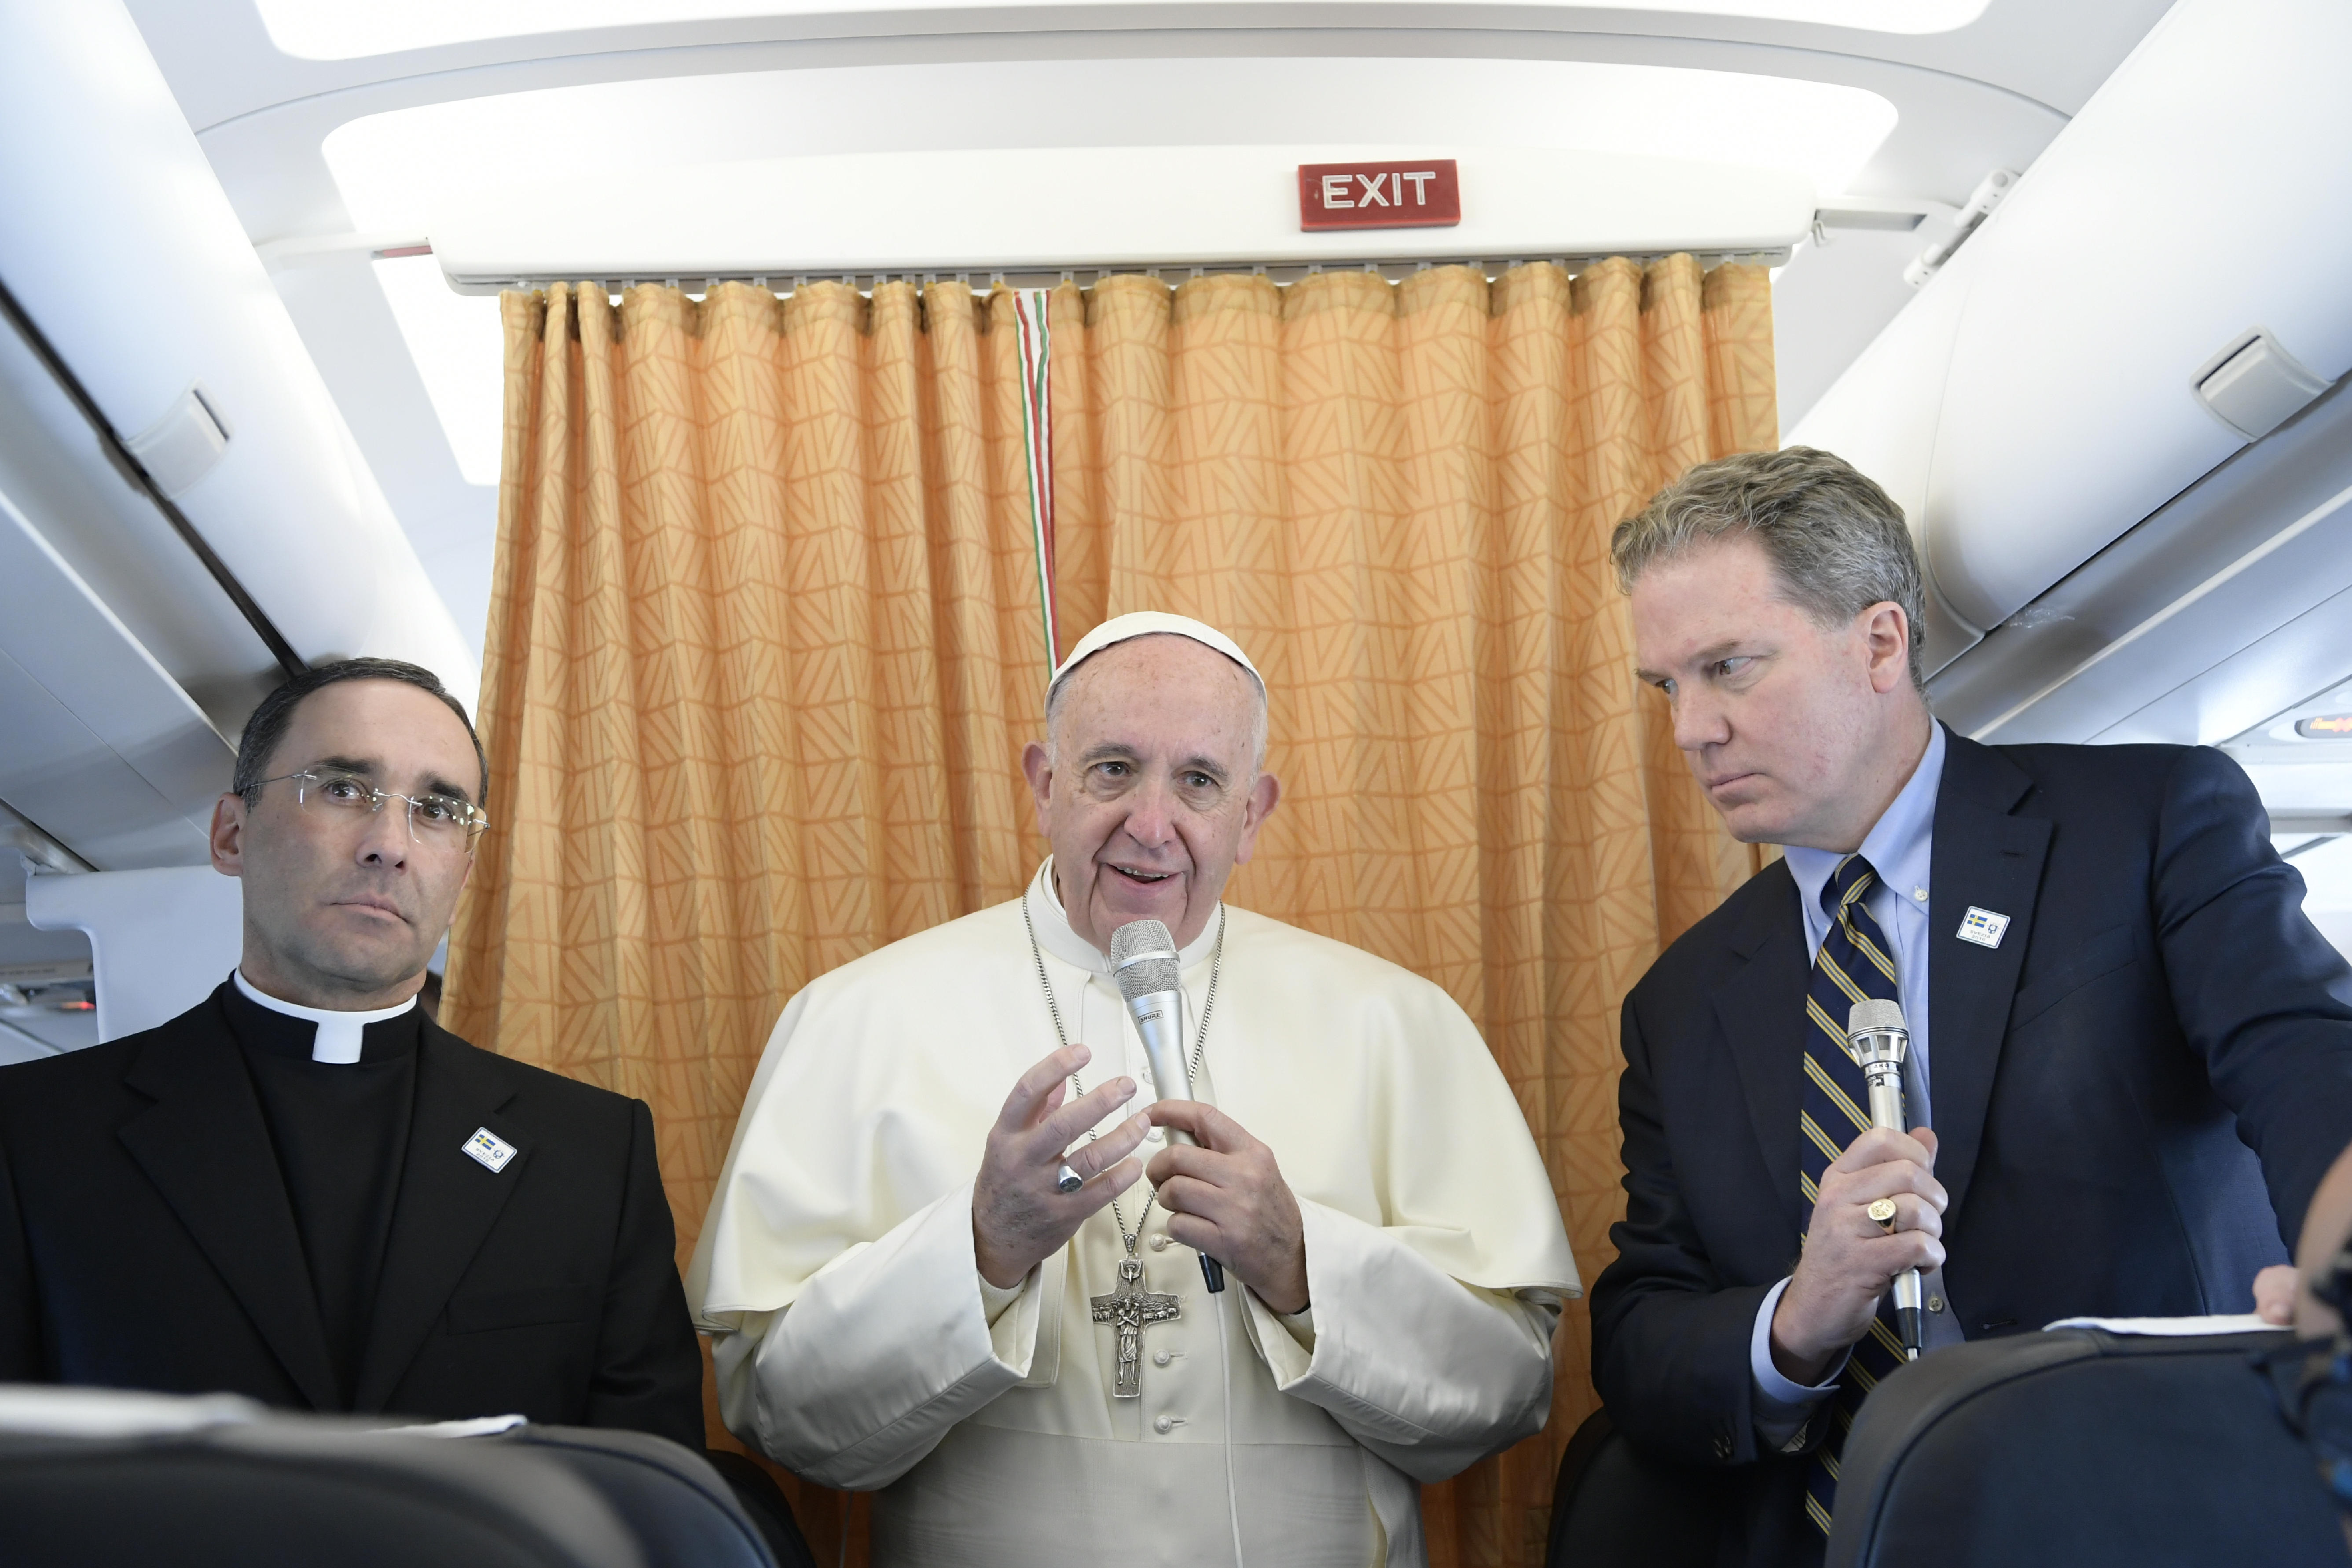 Texto completo de la conferencia de prensa del Papa en el vuelo de regreso de Fátima